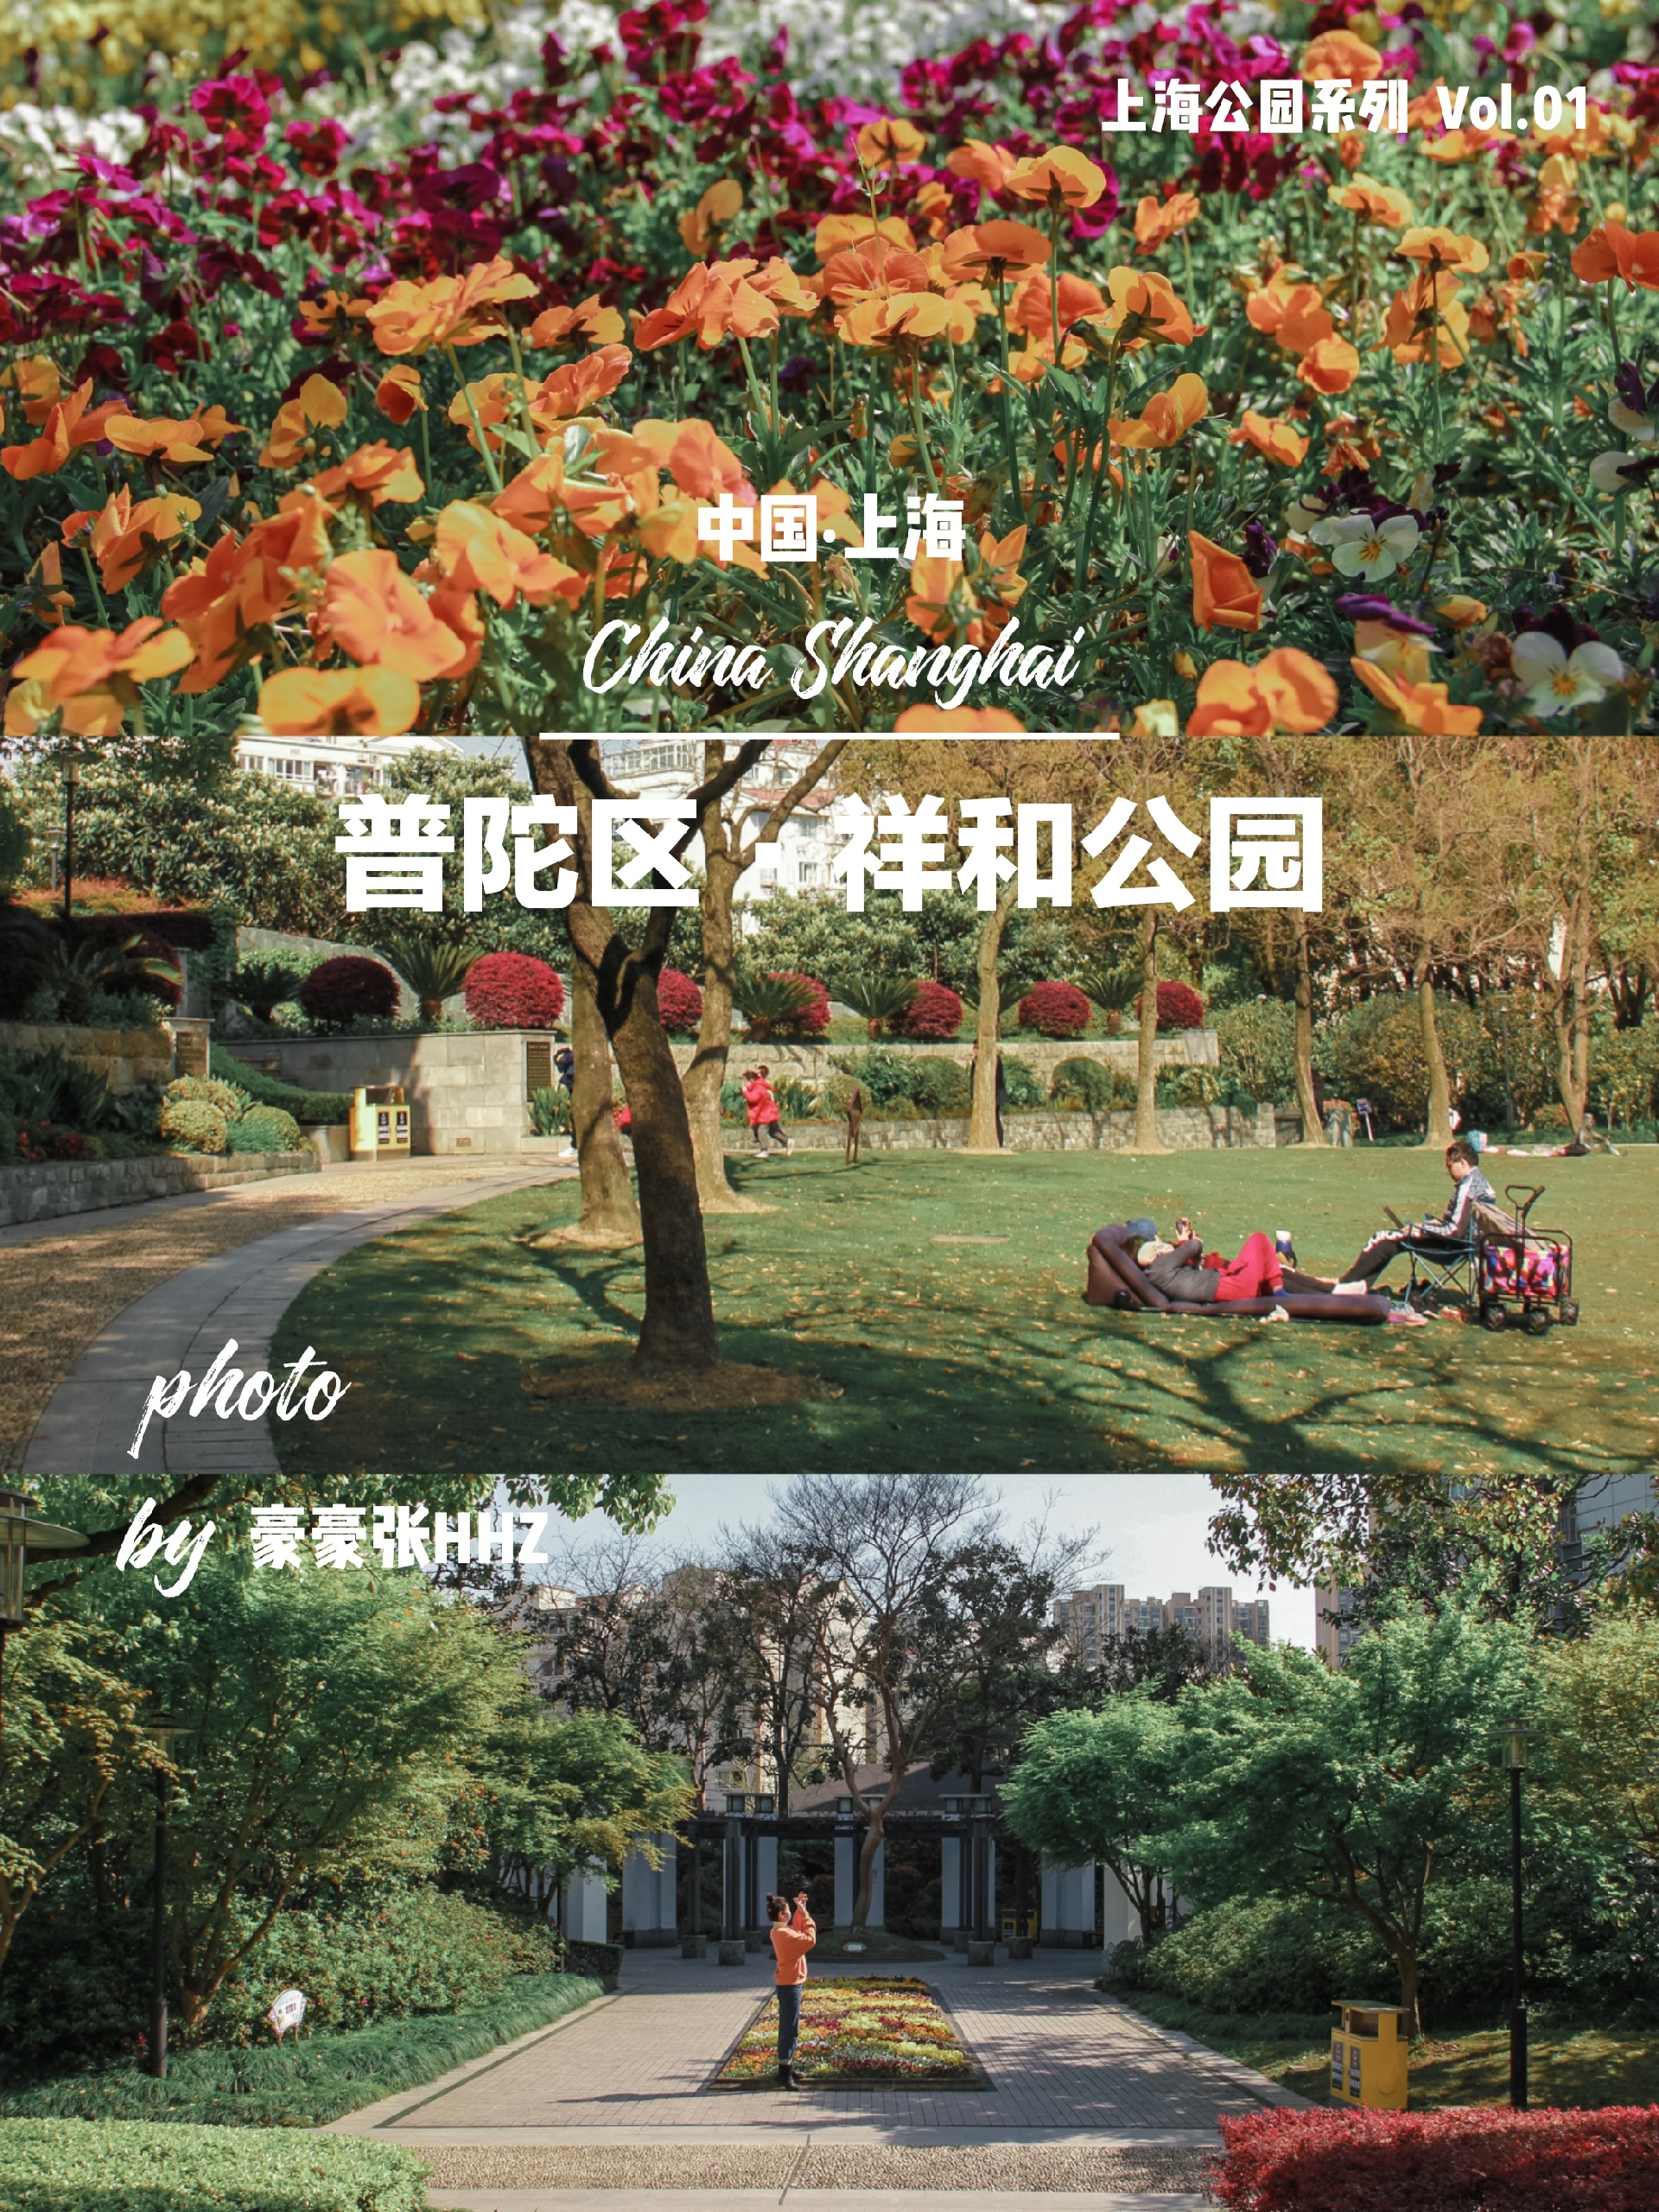 【免费好去处】普陀区祥和公园·踏青赏花来这里上海祥和公园